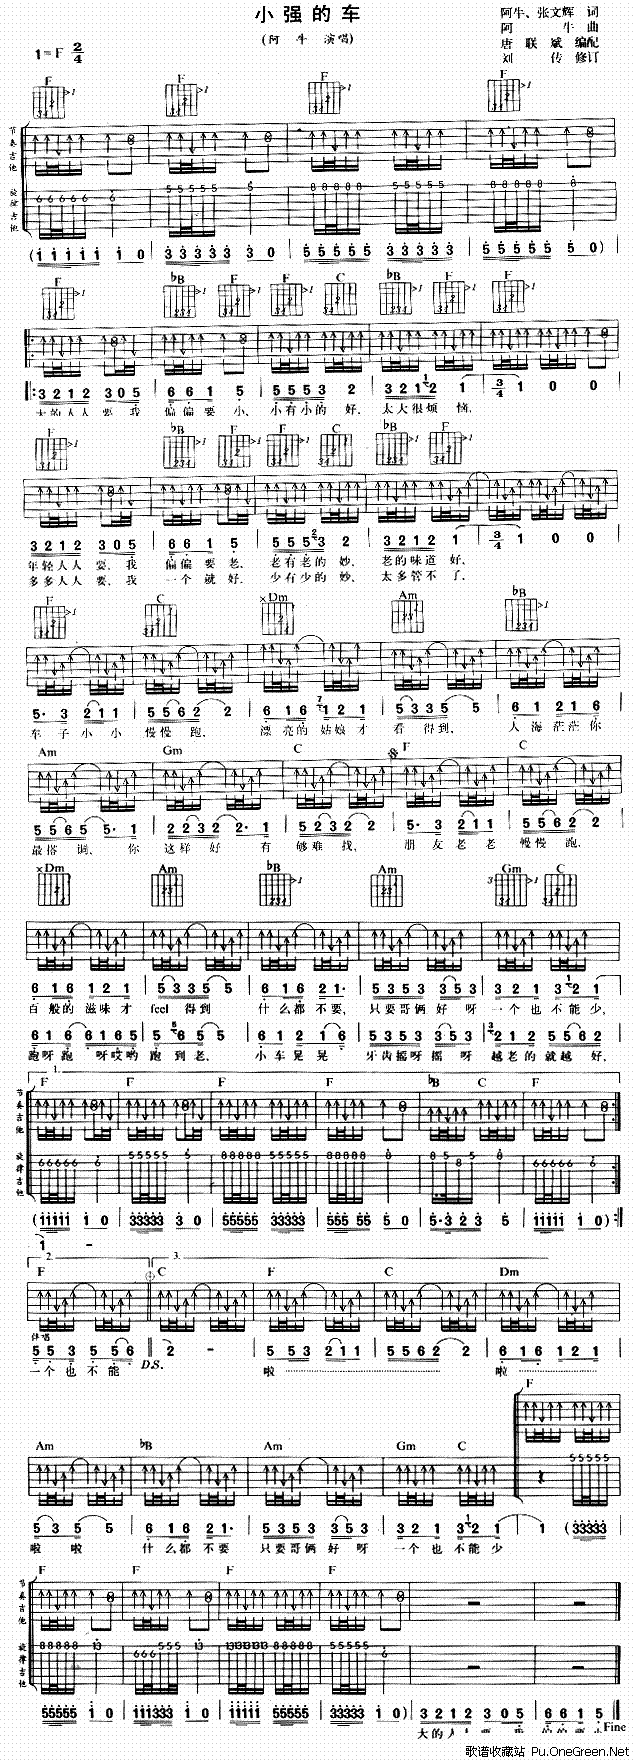 挪威的森林吉他谱,要尾奏的华彩部分完整的  http://image.